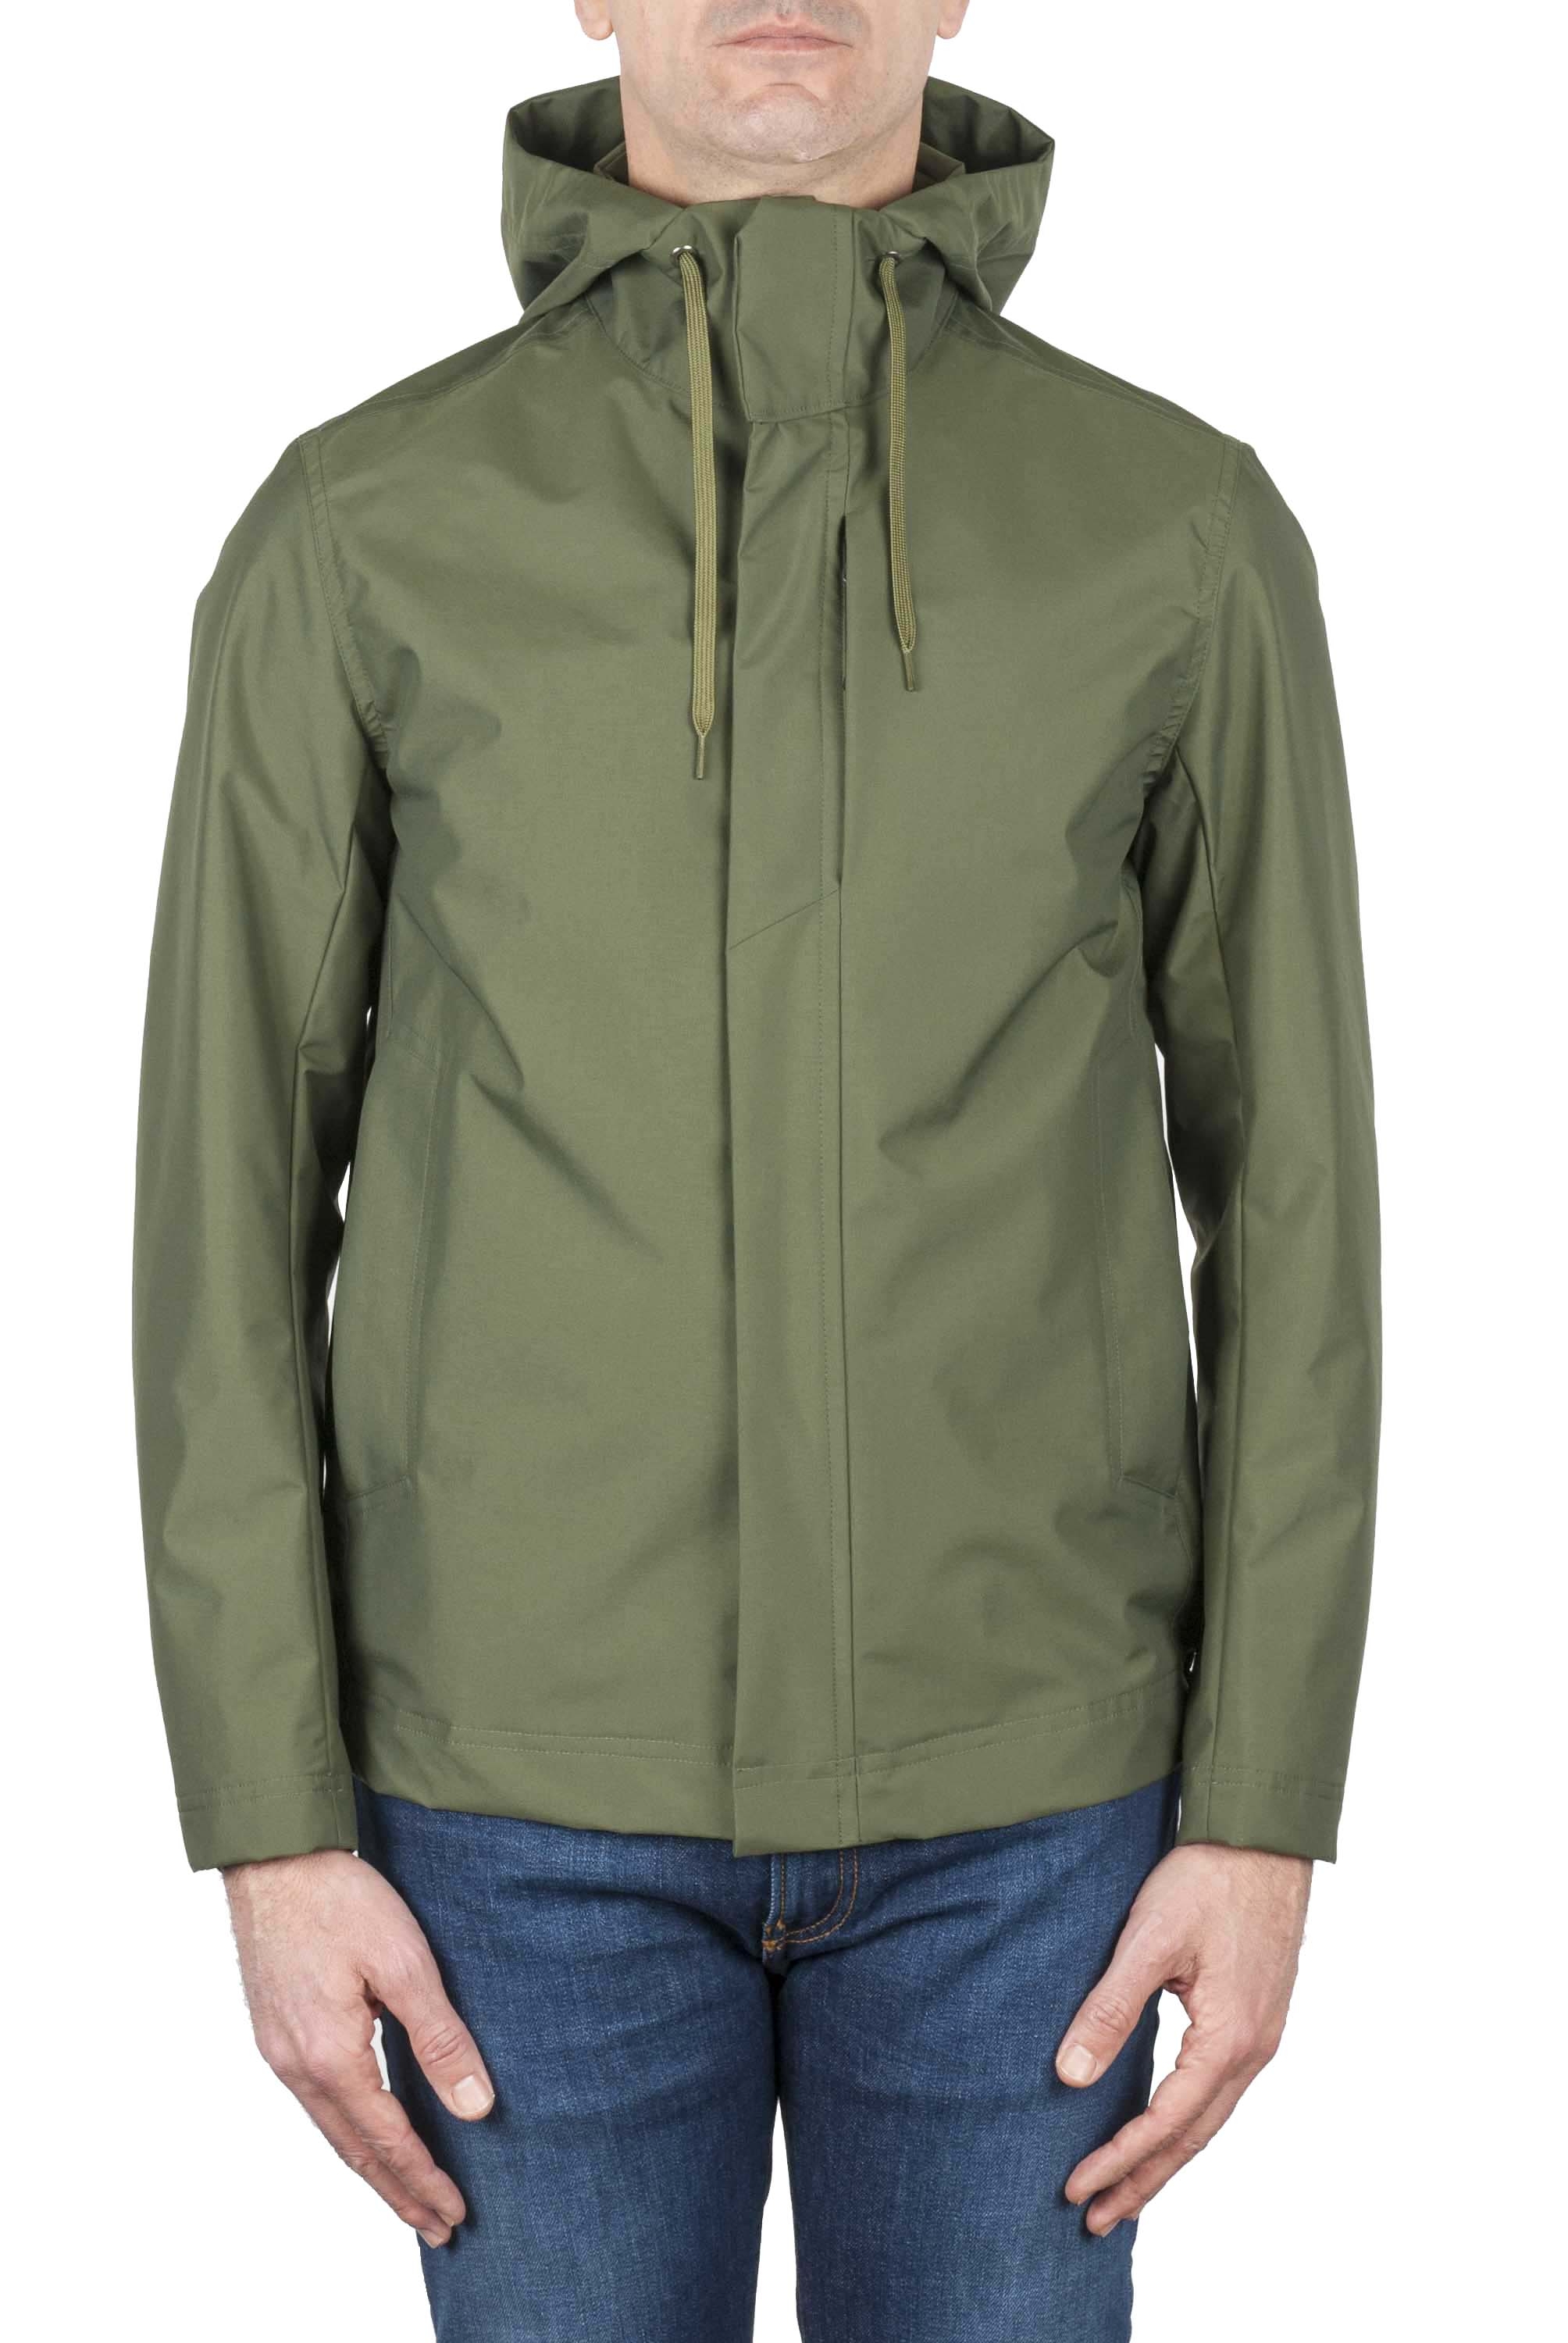 SBU 01558 Technical waterproof hooded windbreaker jacket green 01